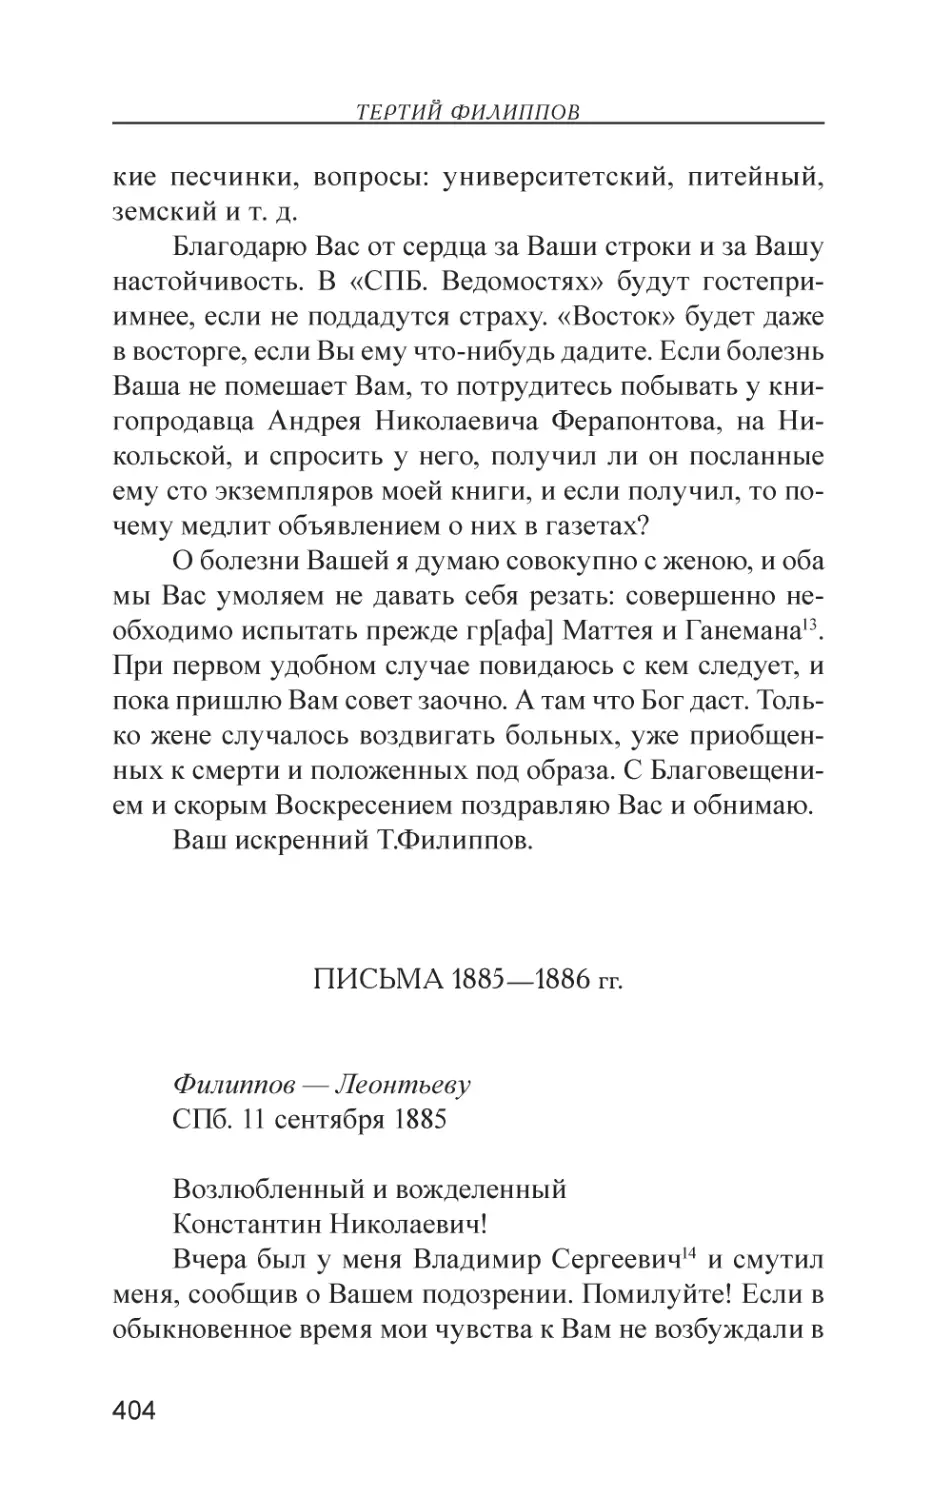 Письма 1885—1886 гг.